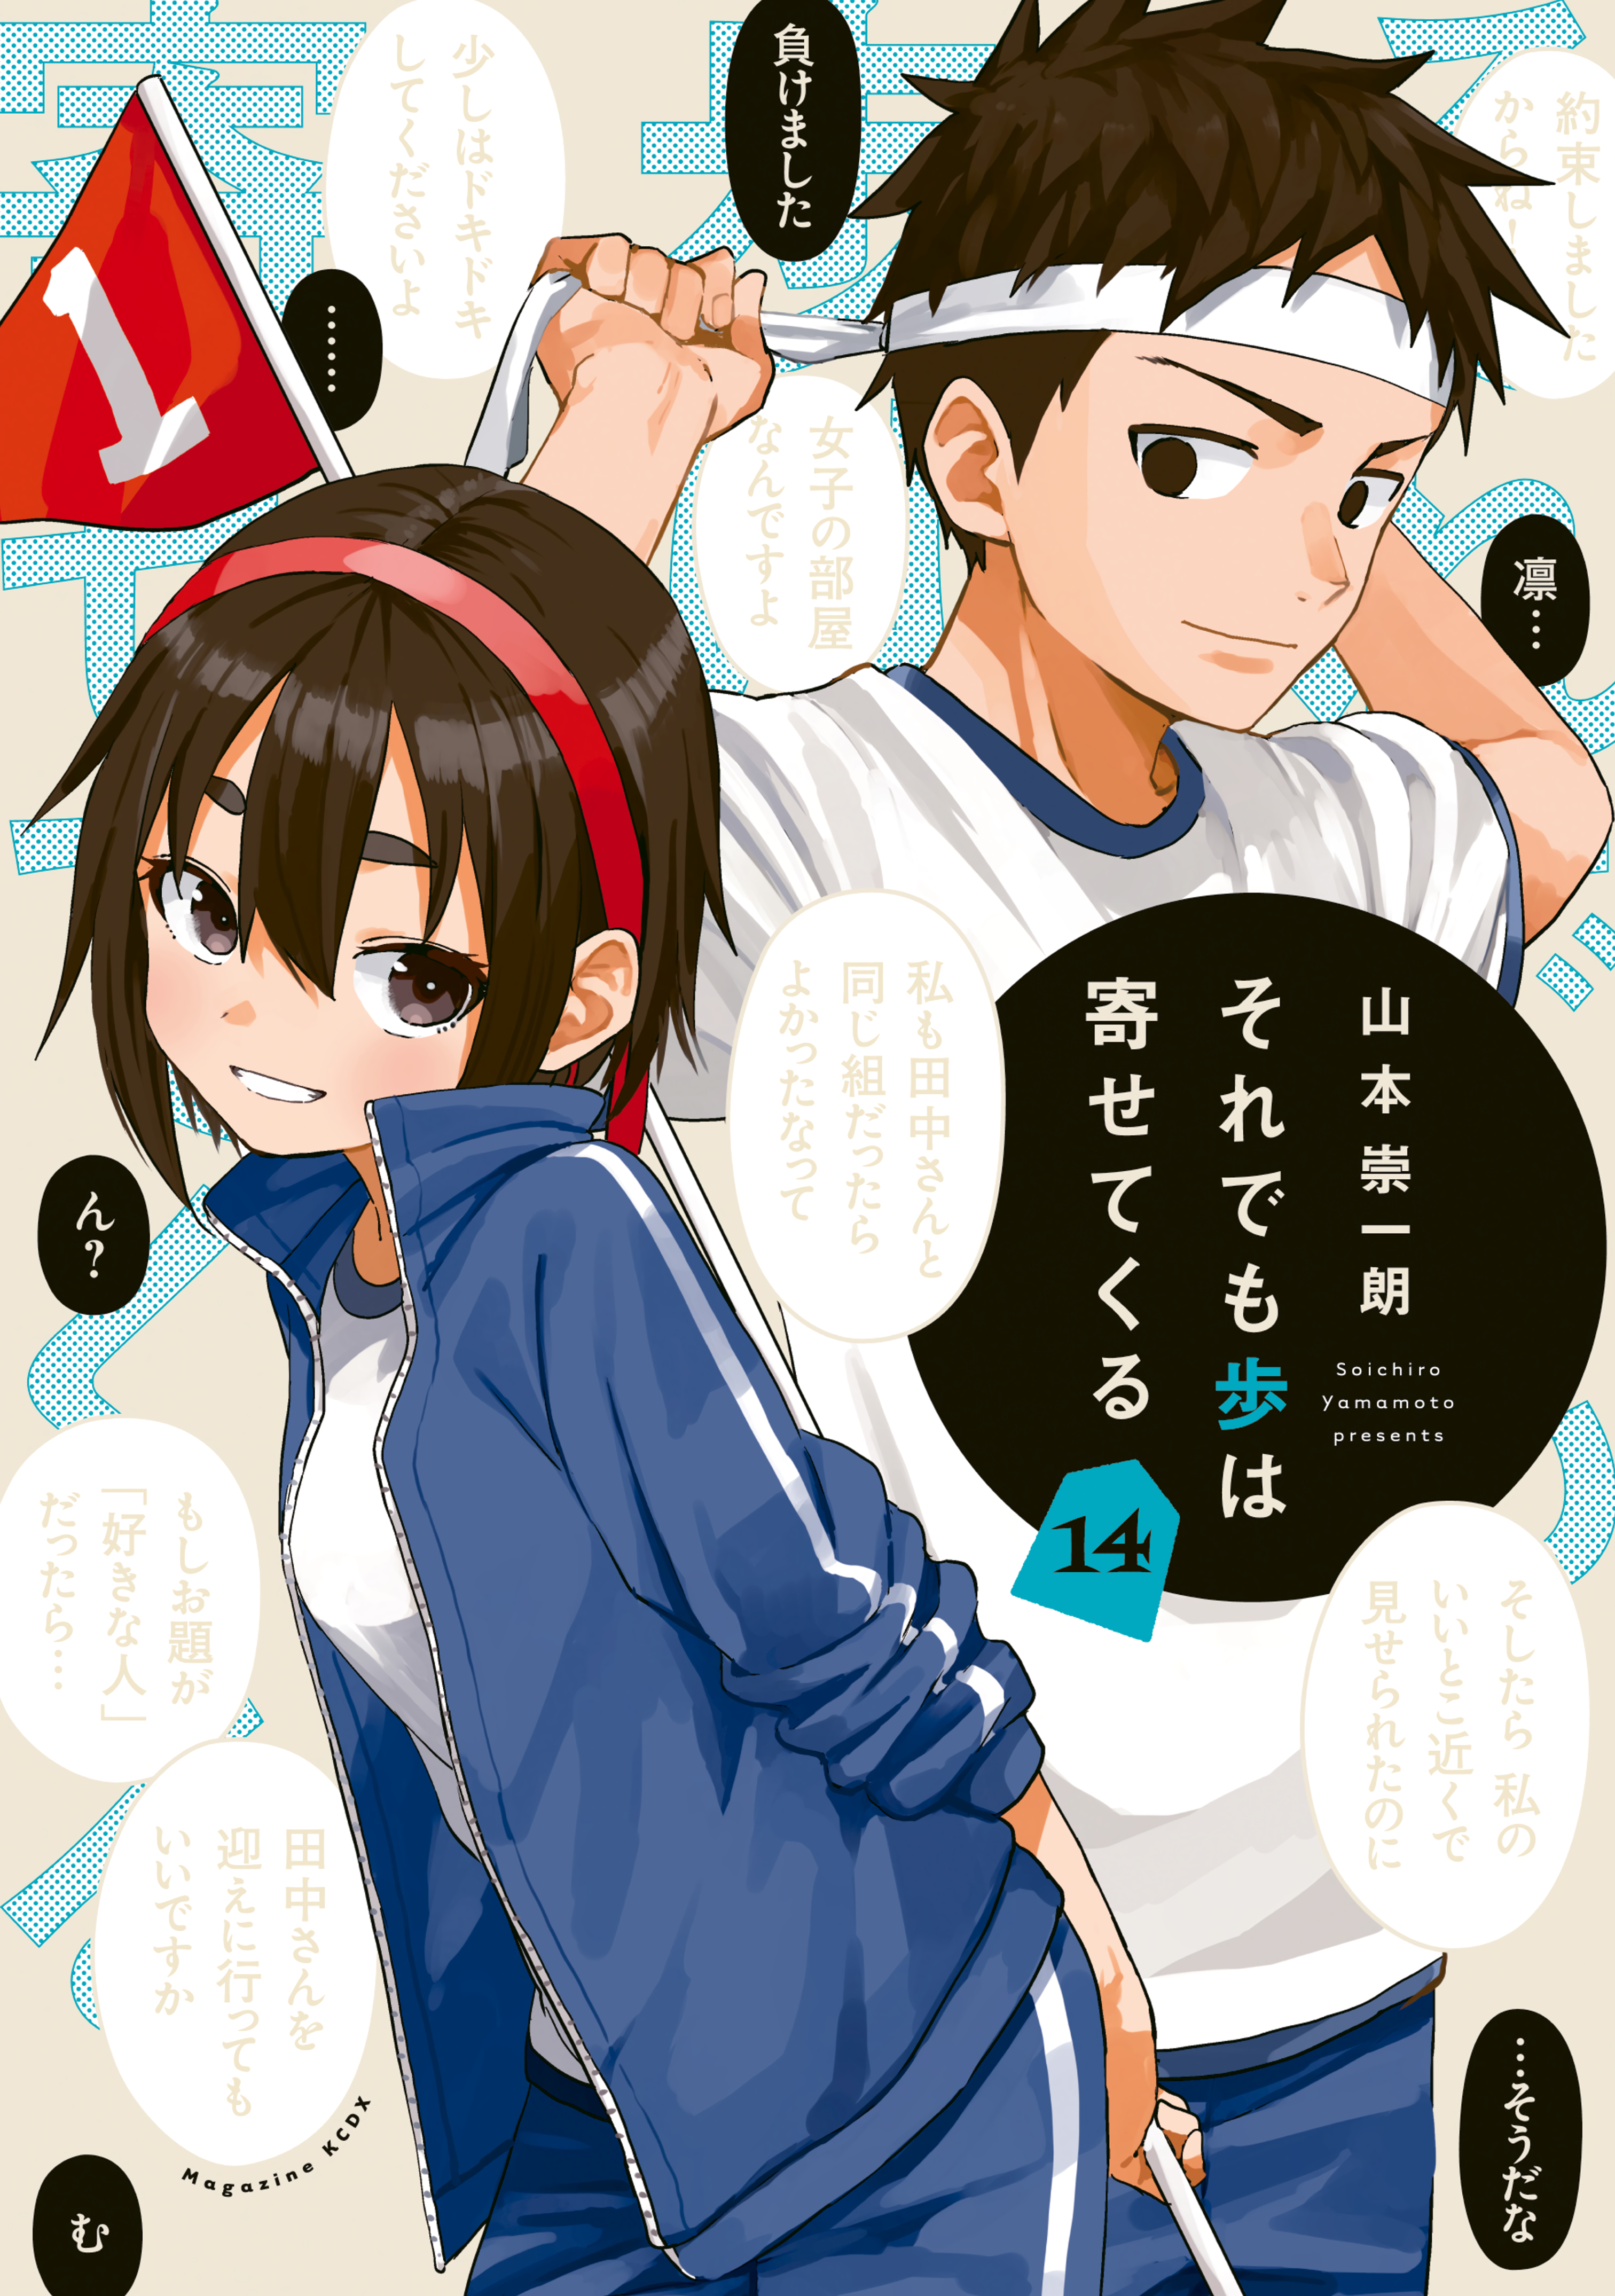 Read Soredemo Ayumu wa Yosetekuru Manga English [New Chapters